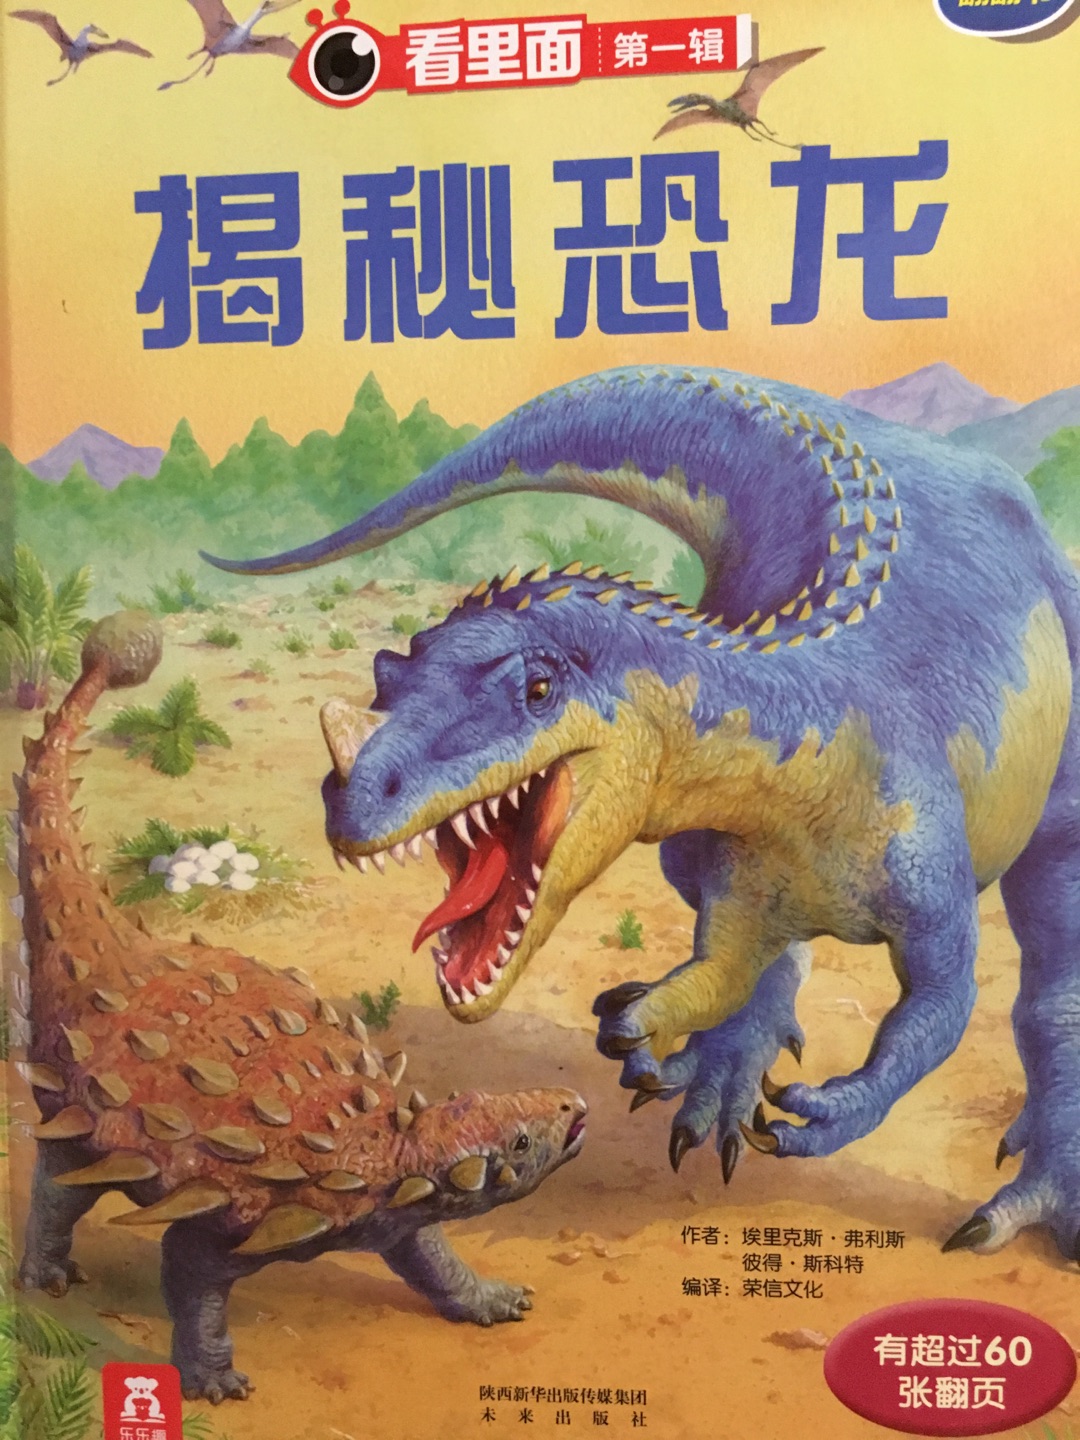 揭秘恐龙 内容不错哦，也挺丰富，恐龙是孩子的最爱！